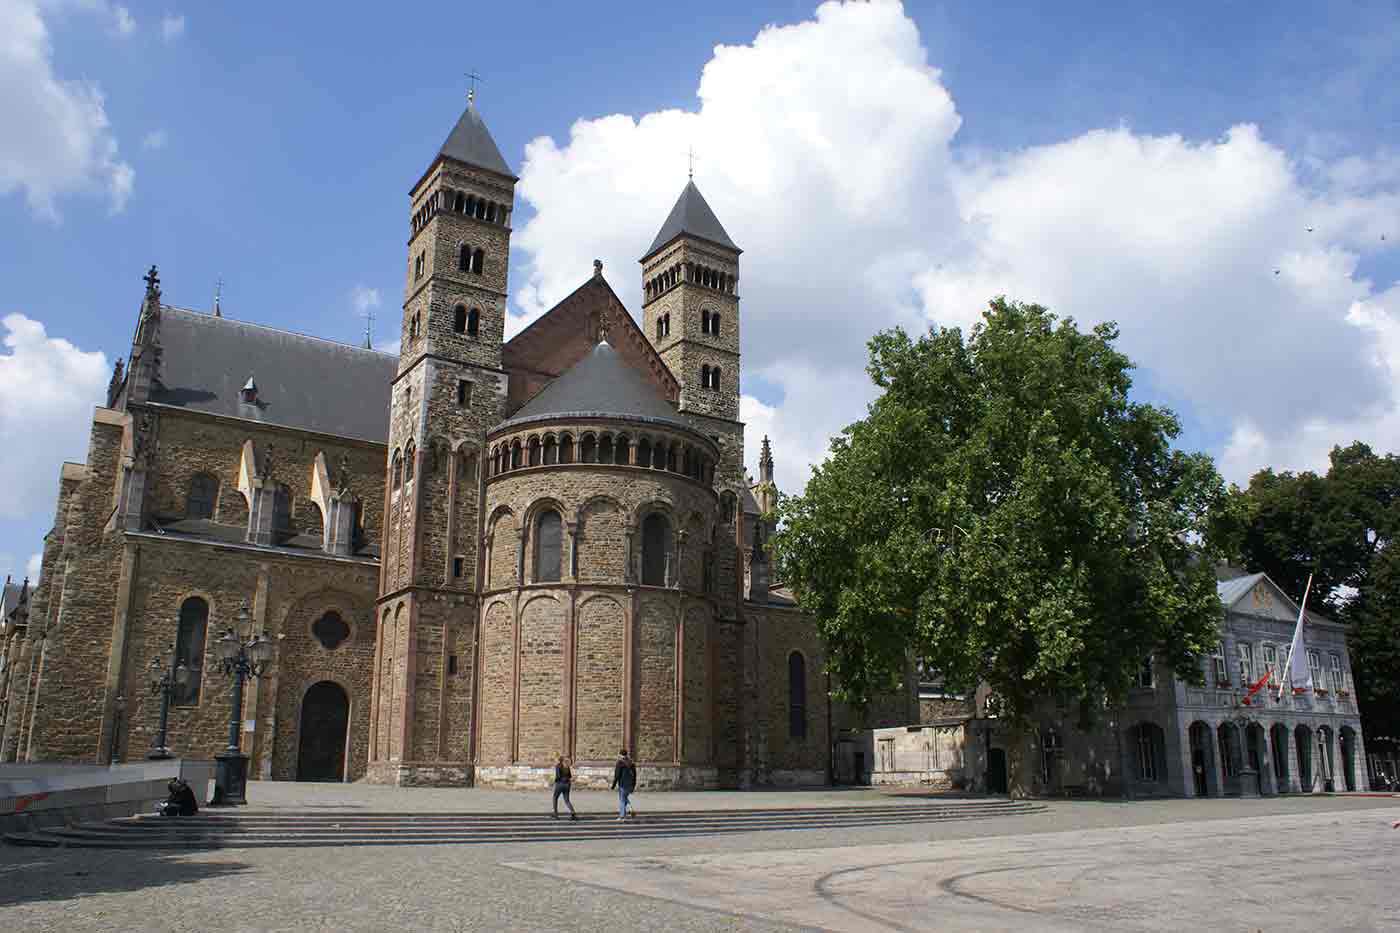 Basilica of Saint Servatius